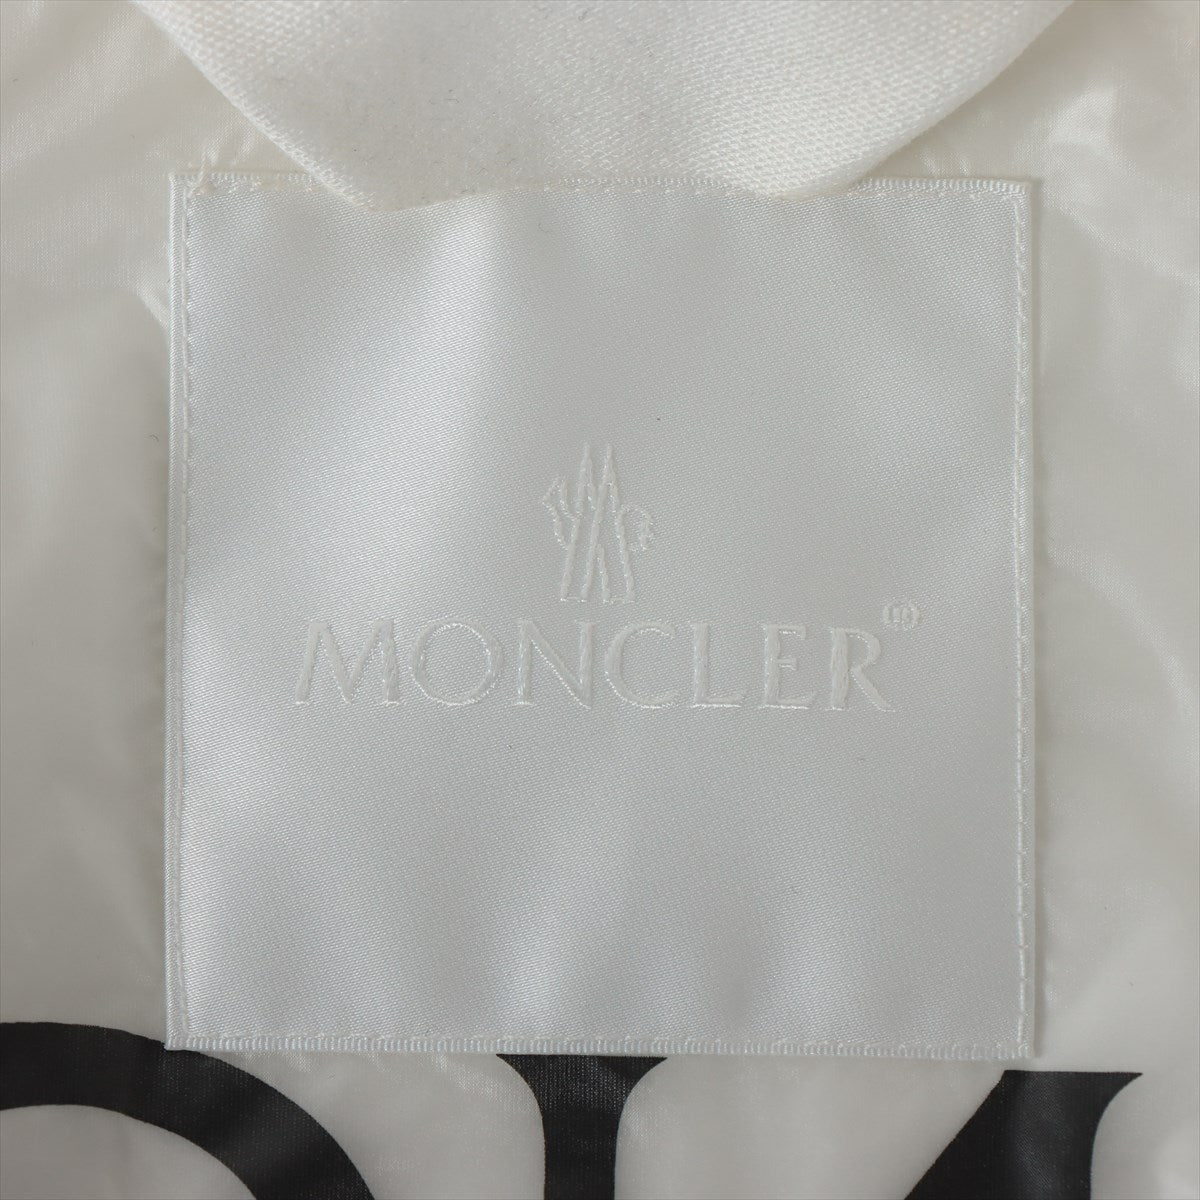 Moncler Genius 1952 x Awake 19-year Nylon Jacket 0 Men's White  SANGAY Genius tag out of stock